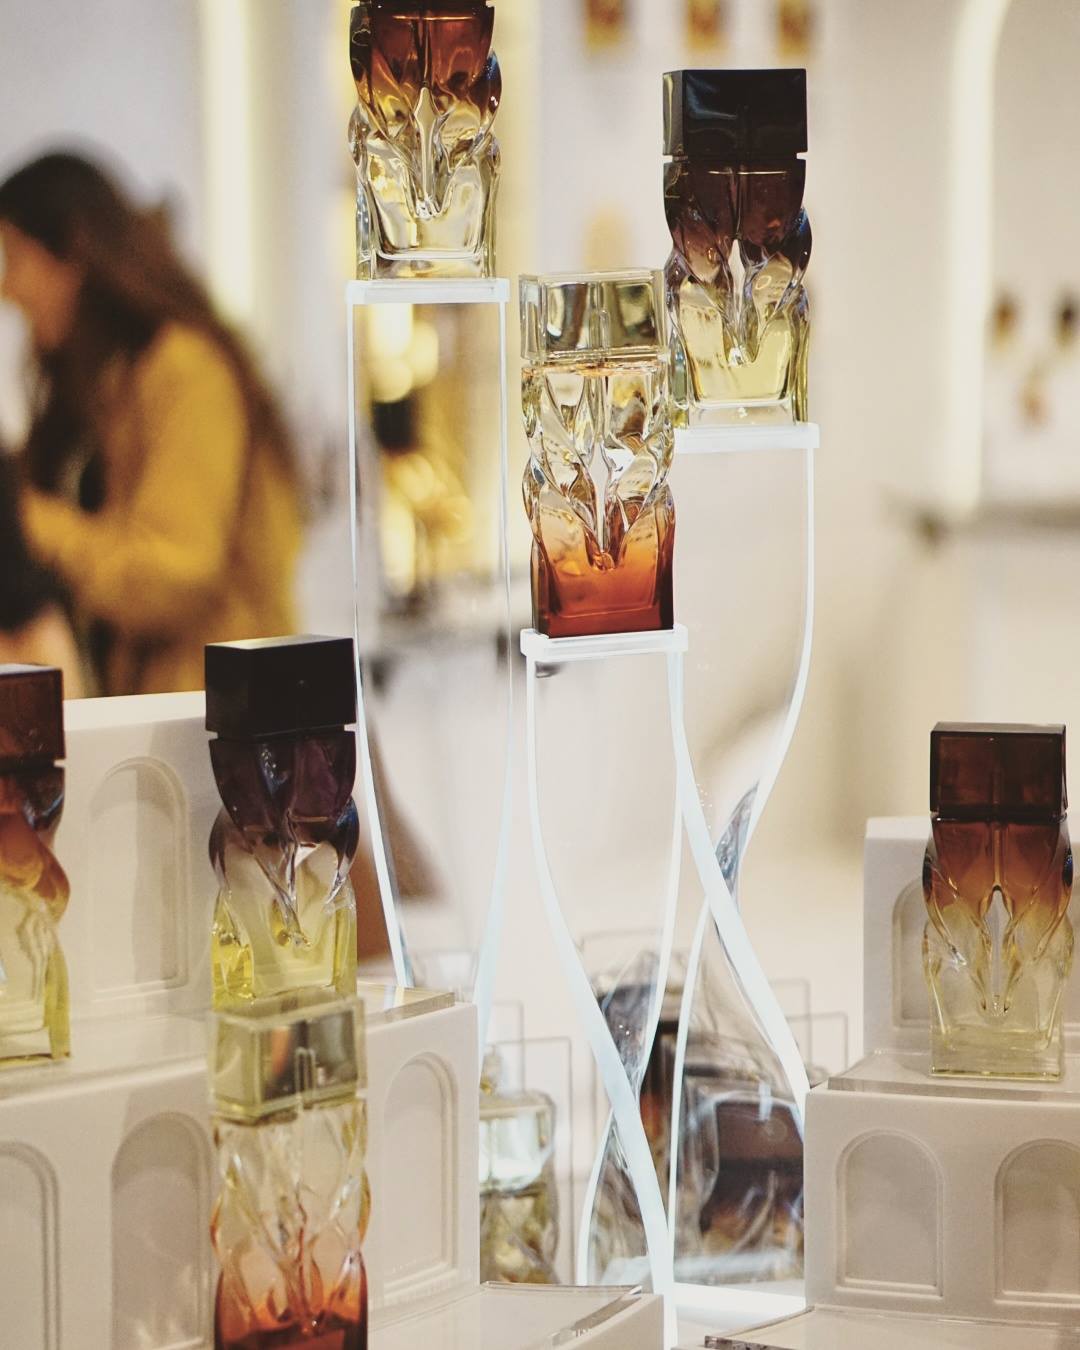 Thomas Heatherwick designs a perfume bottle for Louboutin